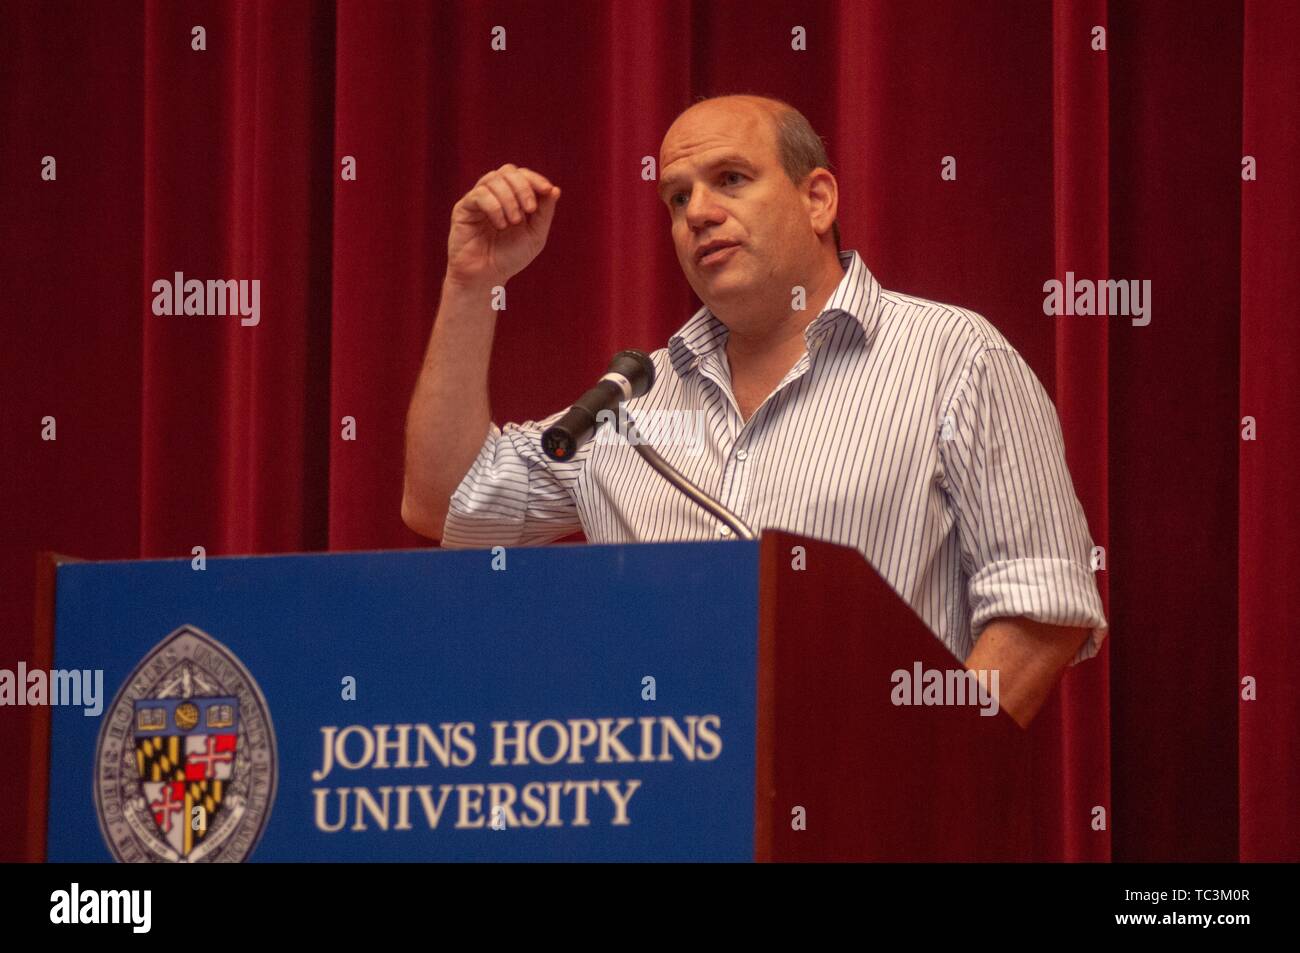 David Simon, un producteur de télévision et créateur de l'émission de télévision HBO le fil, parle sur un podium à la Johns Hopkins University, Baltimore, Maryland, le 26 septembre 2007. À partir de la collection photographique de Homewood. () Banque D'Images